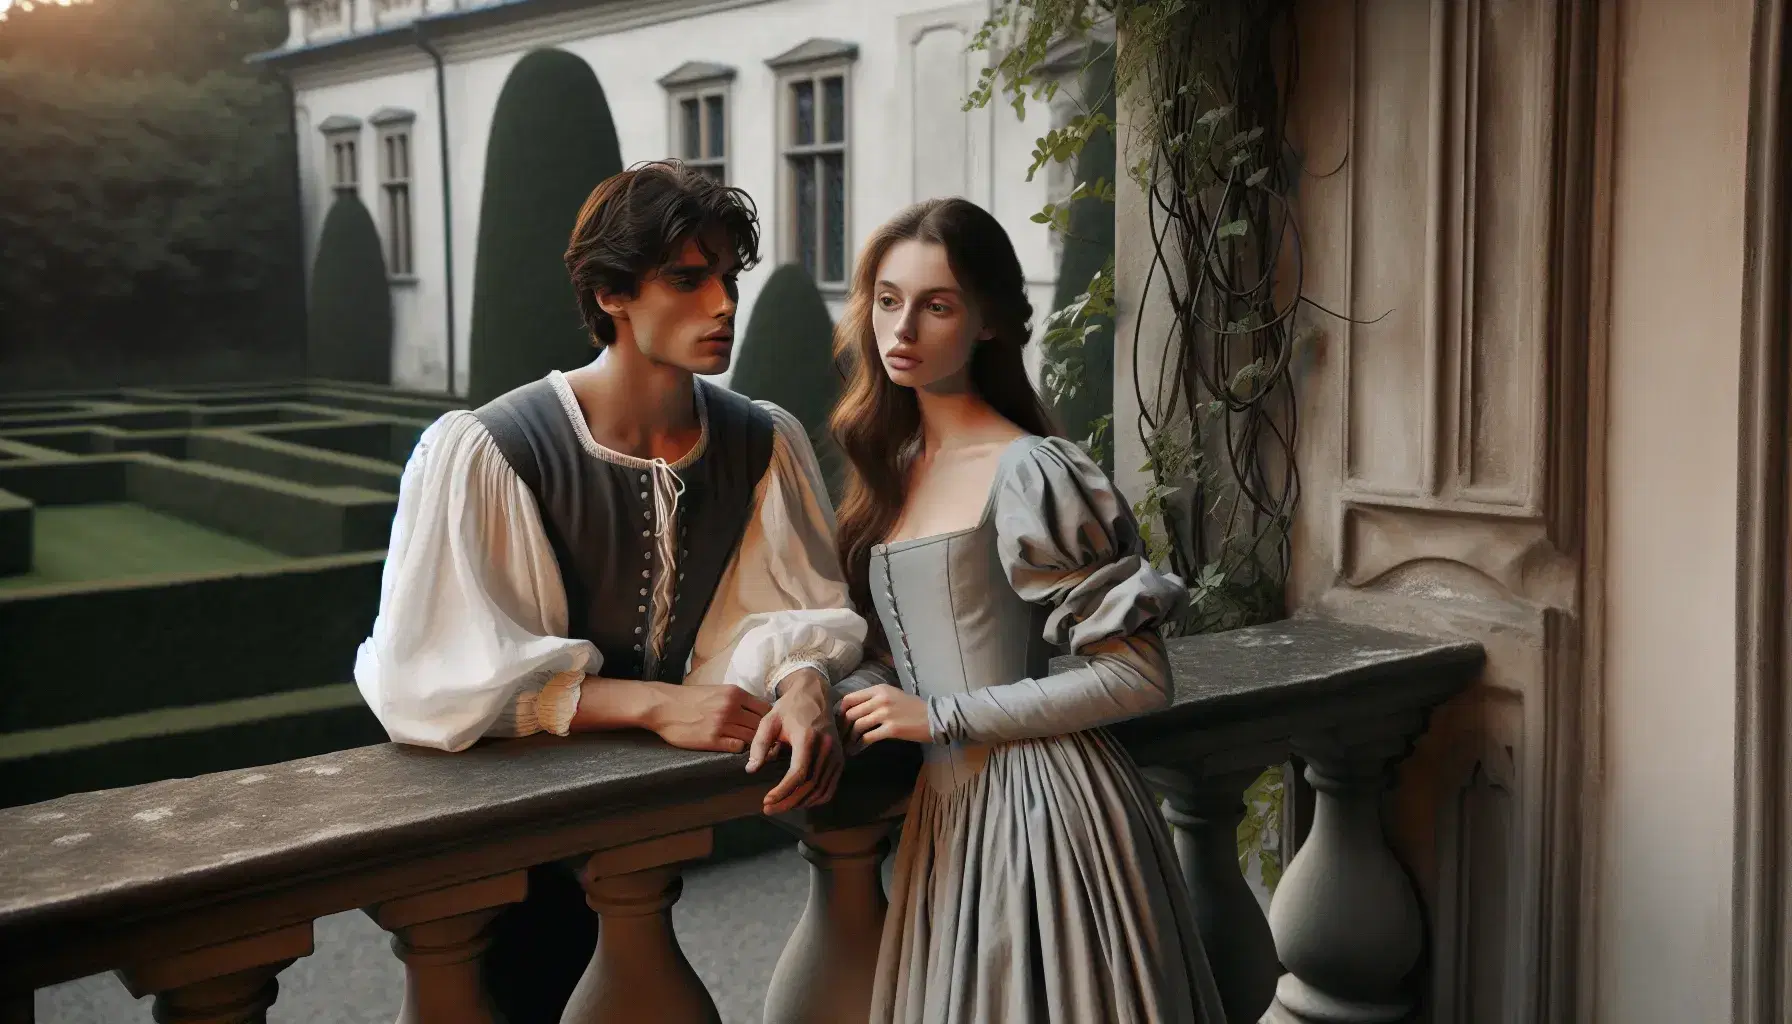 Joven pareja vestida en estilo renacentista en un balcón de piedra adornado con plantas trepadoras, bajo una luz suave que realza un encuentro romántico.